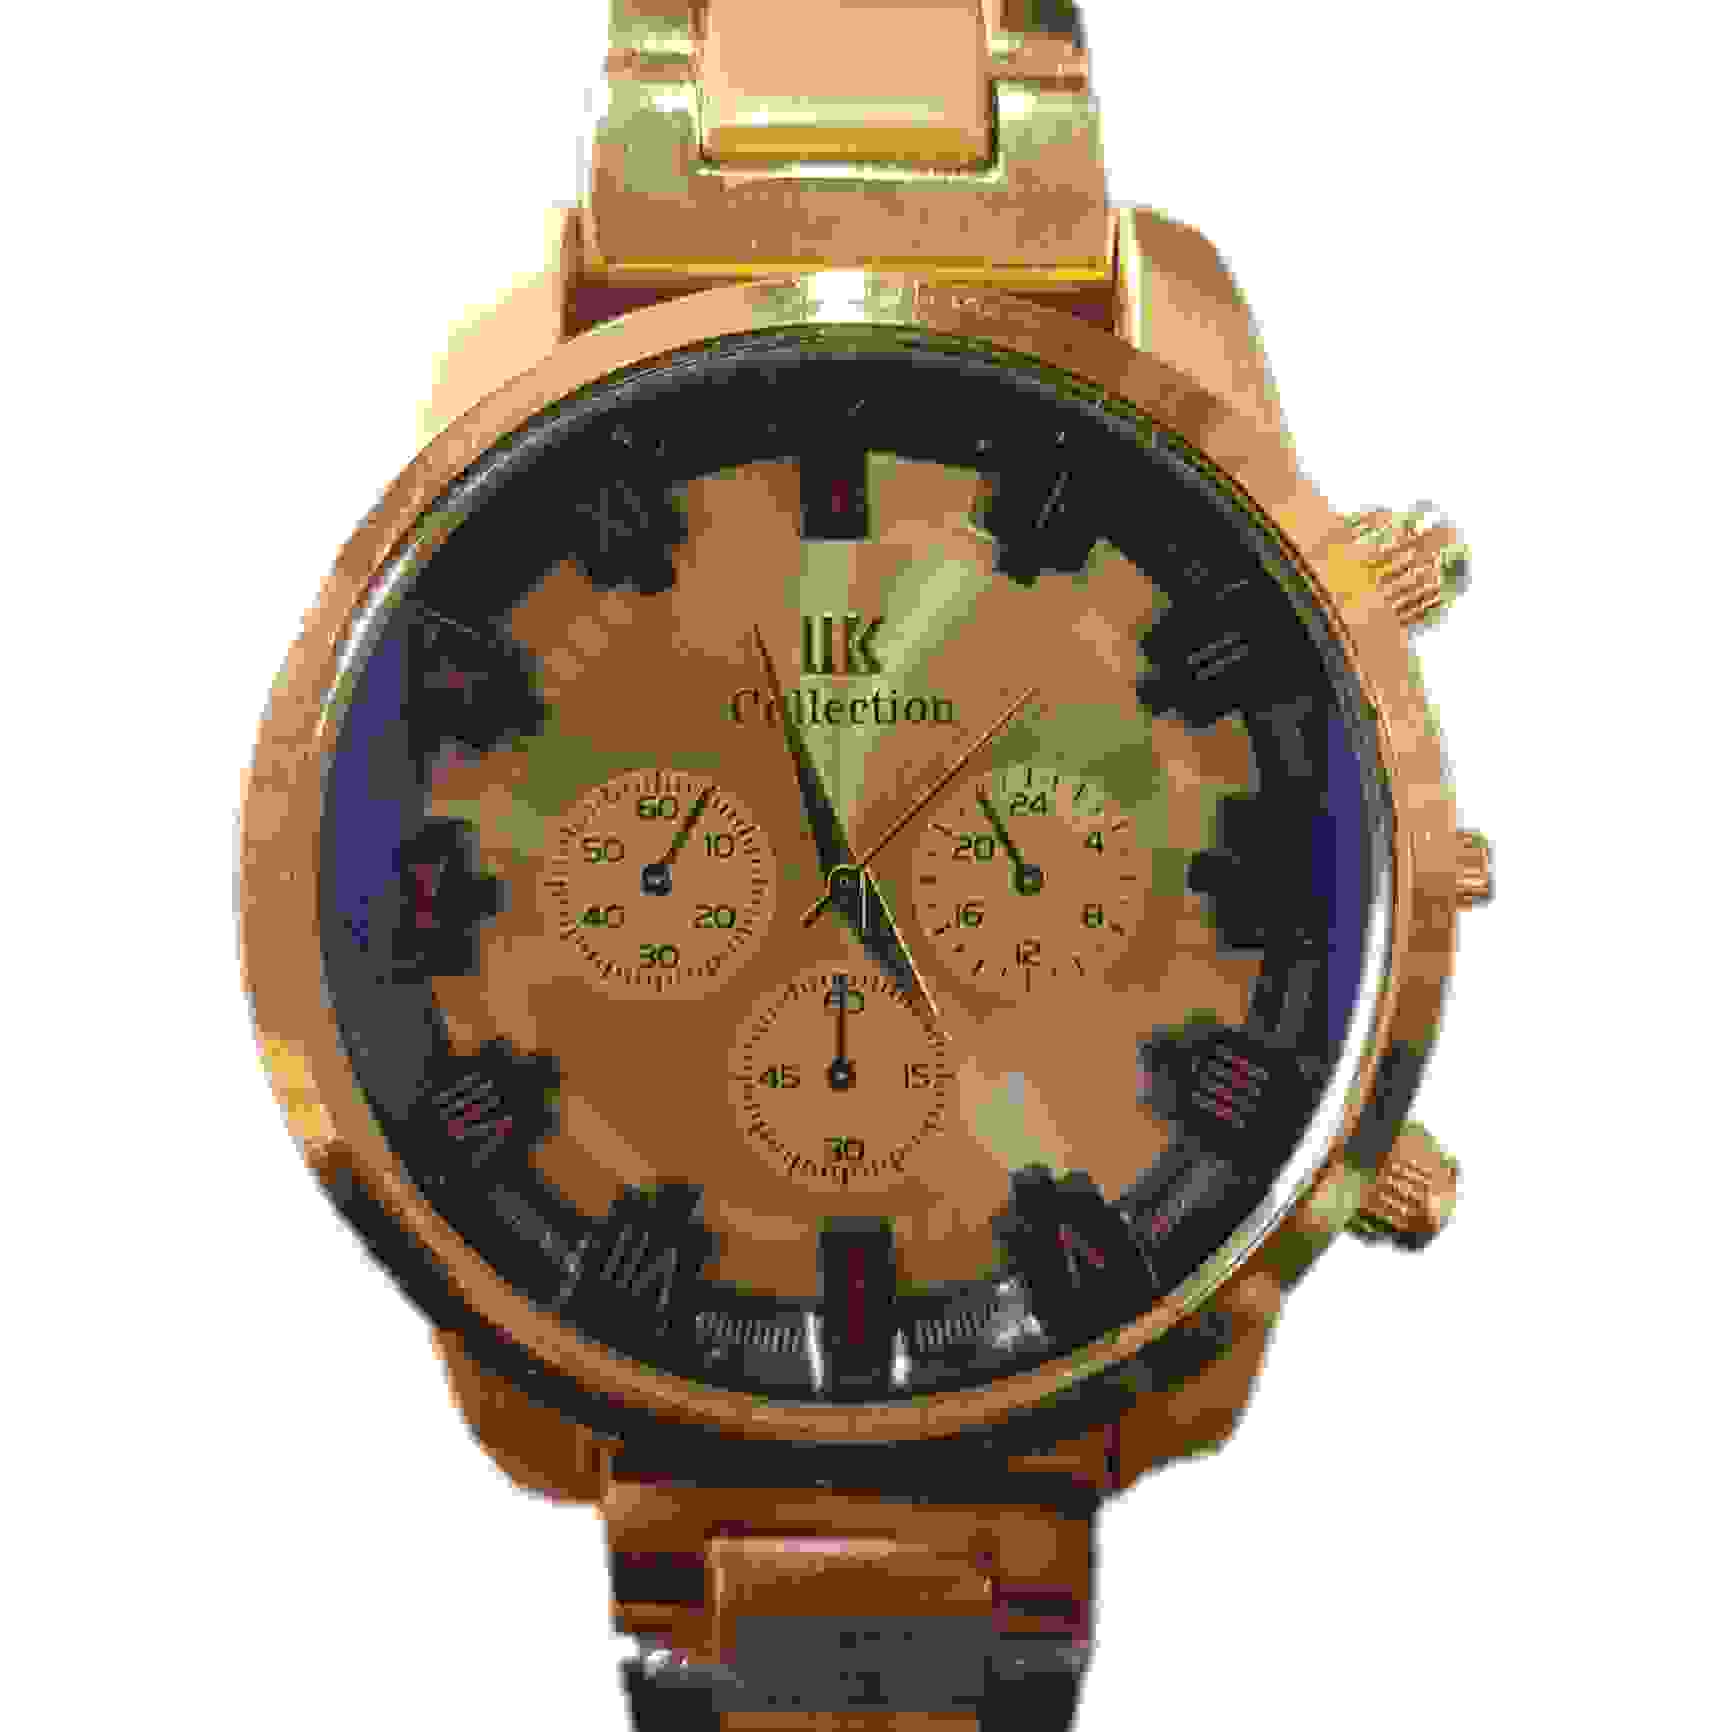 LIK collection quartz watch for men